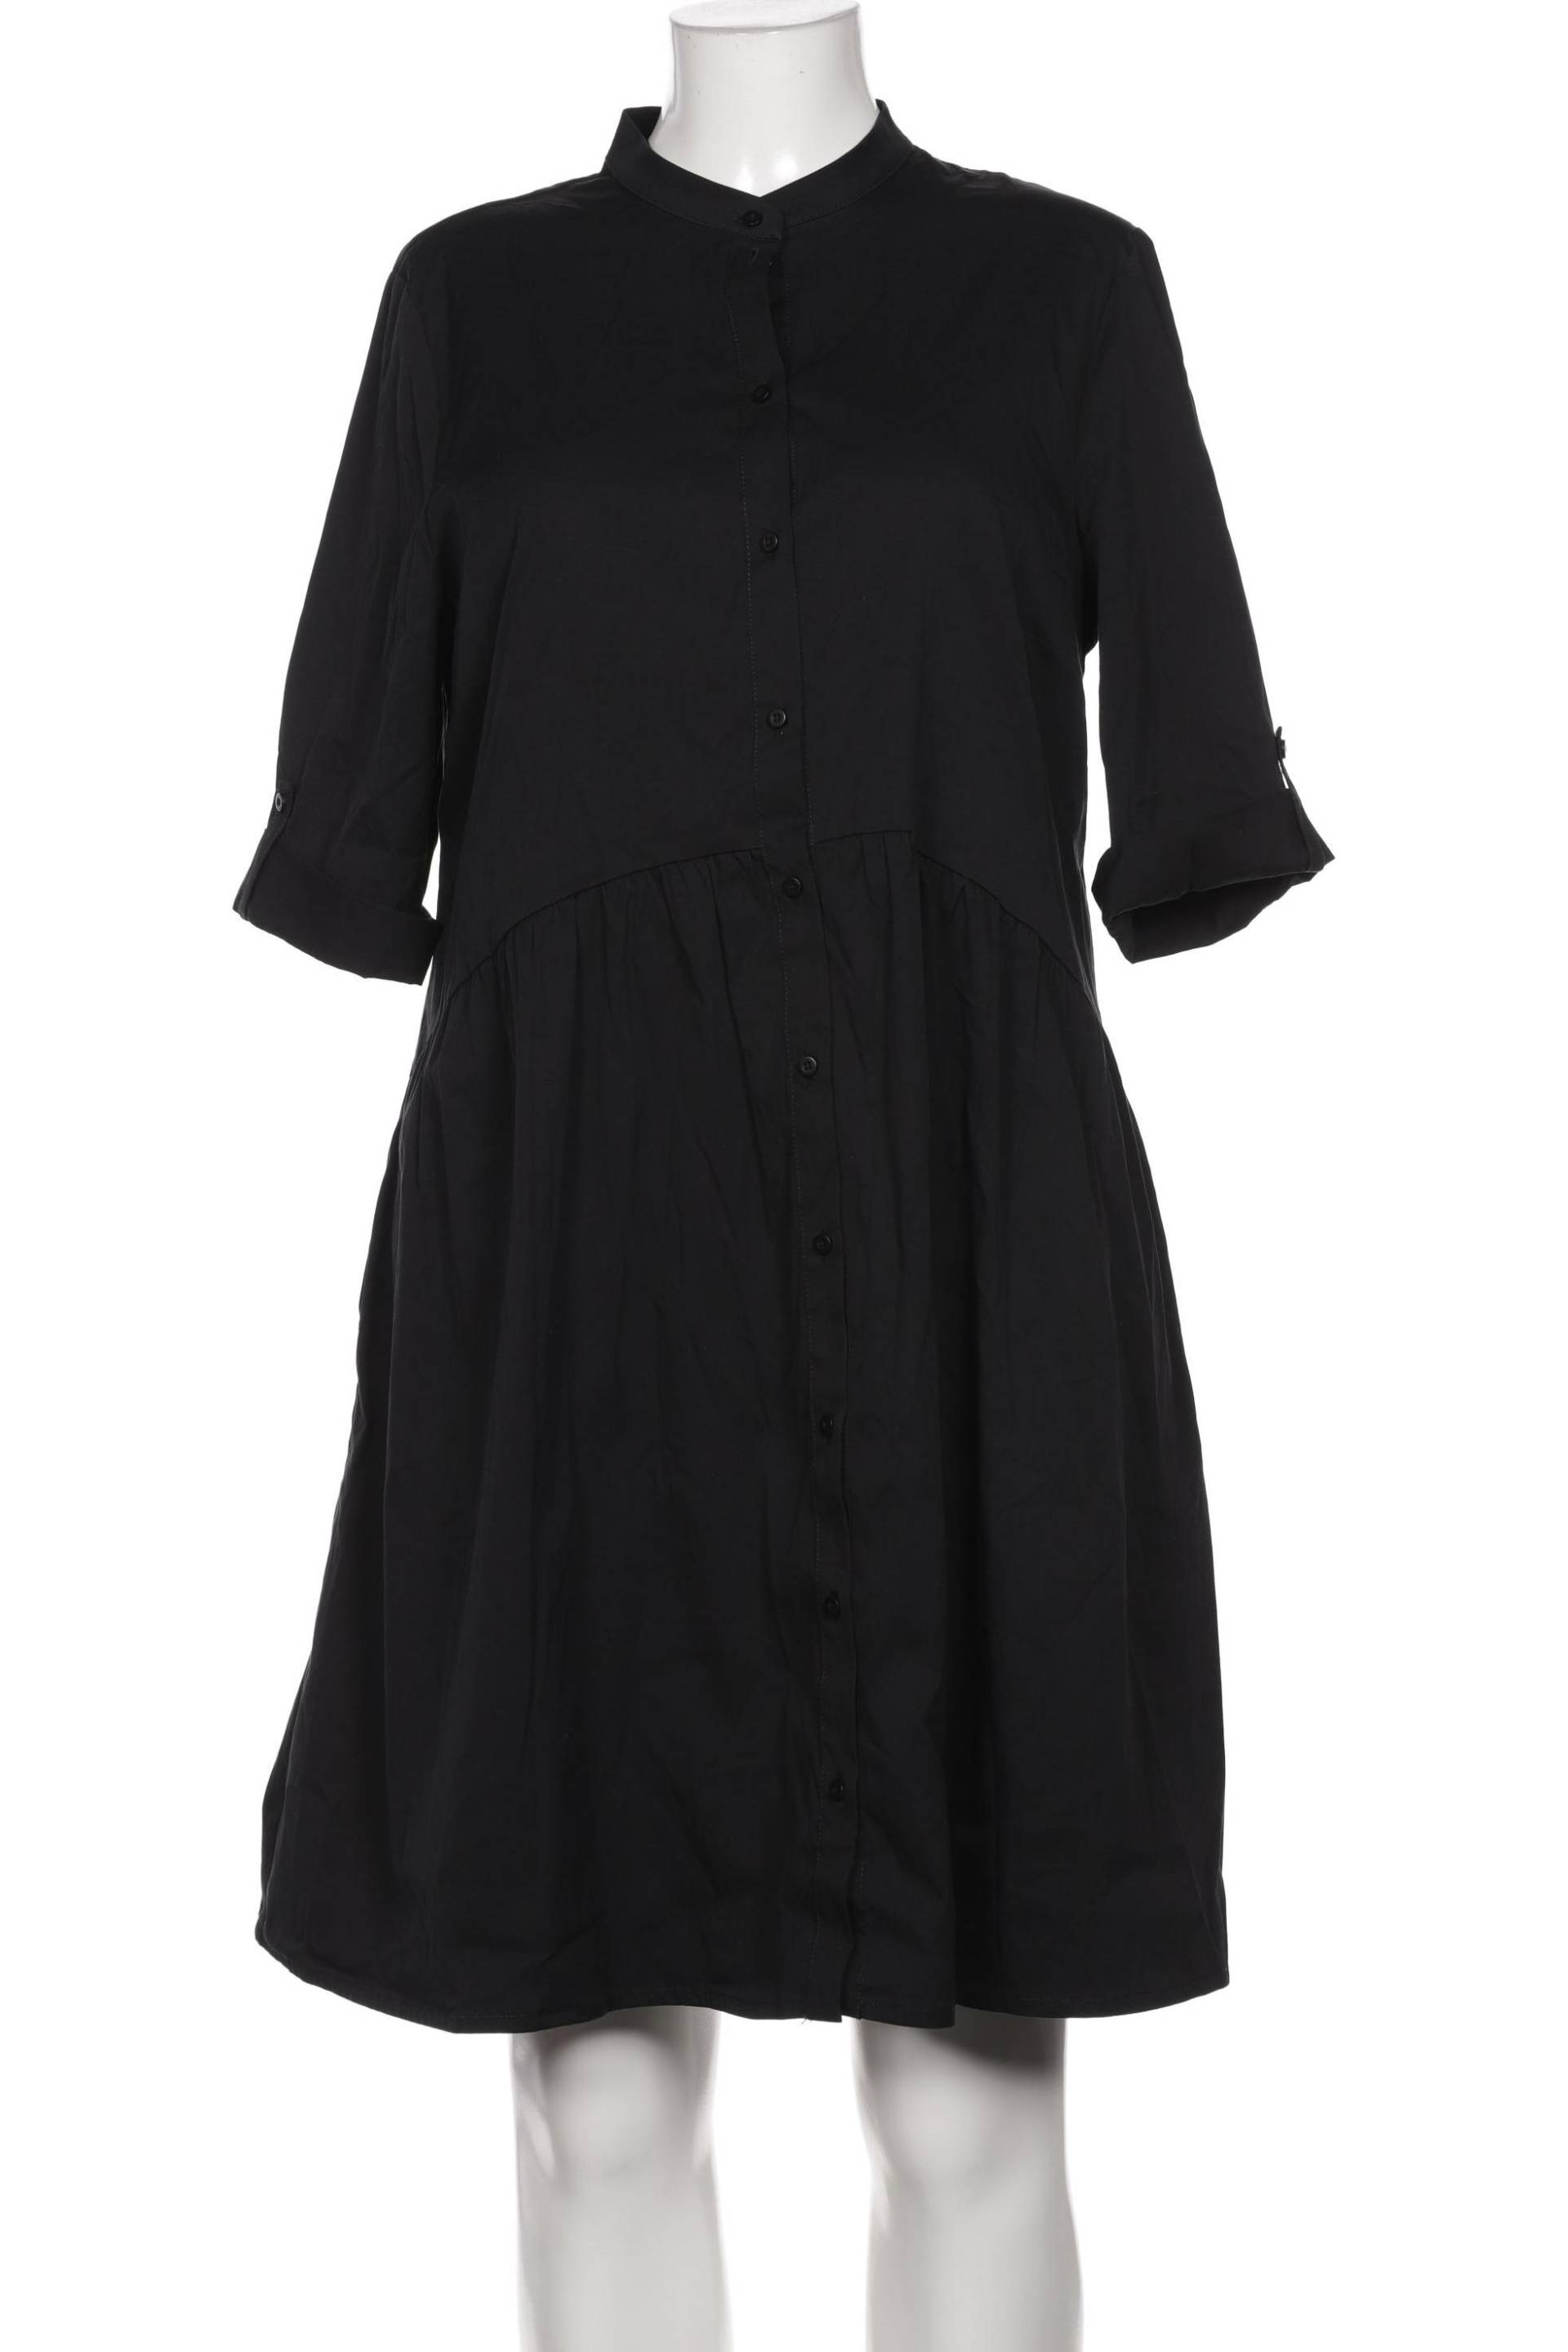 Robe Legere Damen Kleid, schwarz, Gr. 44 von Robe Legere